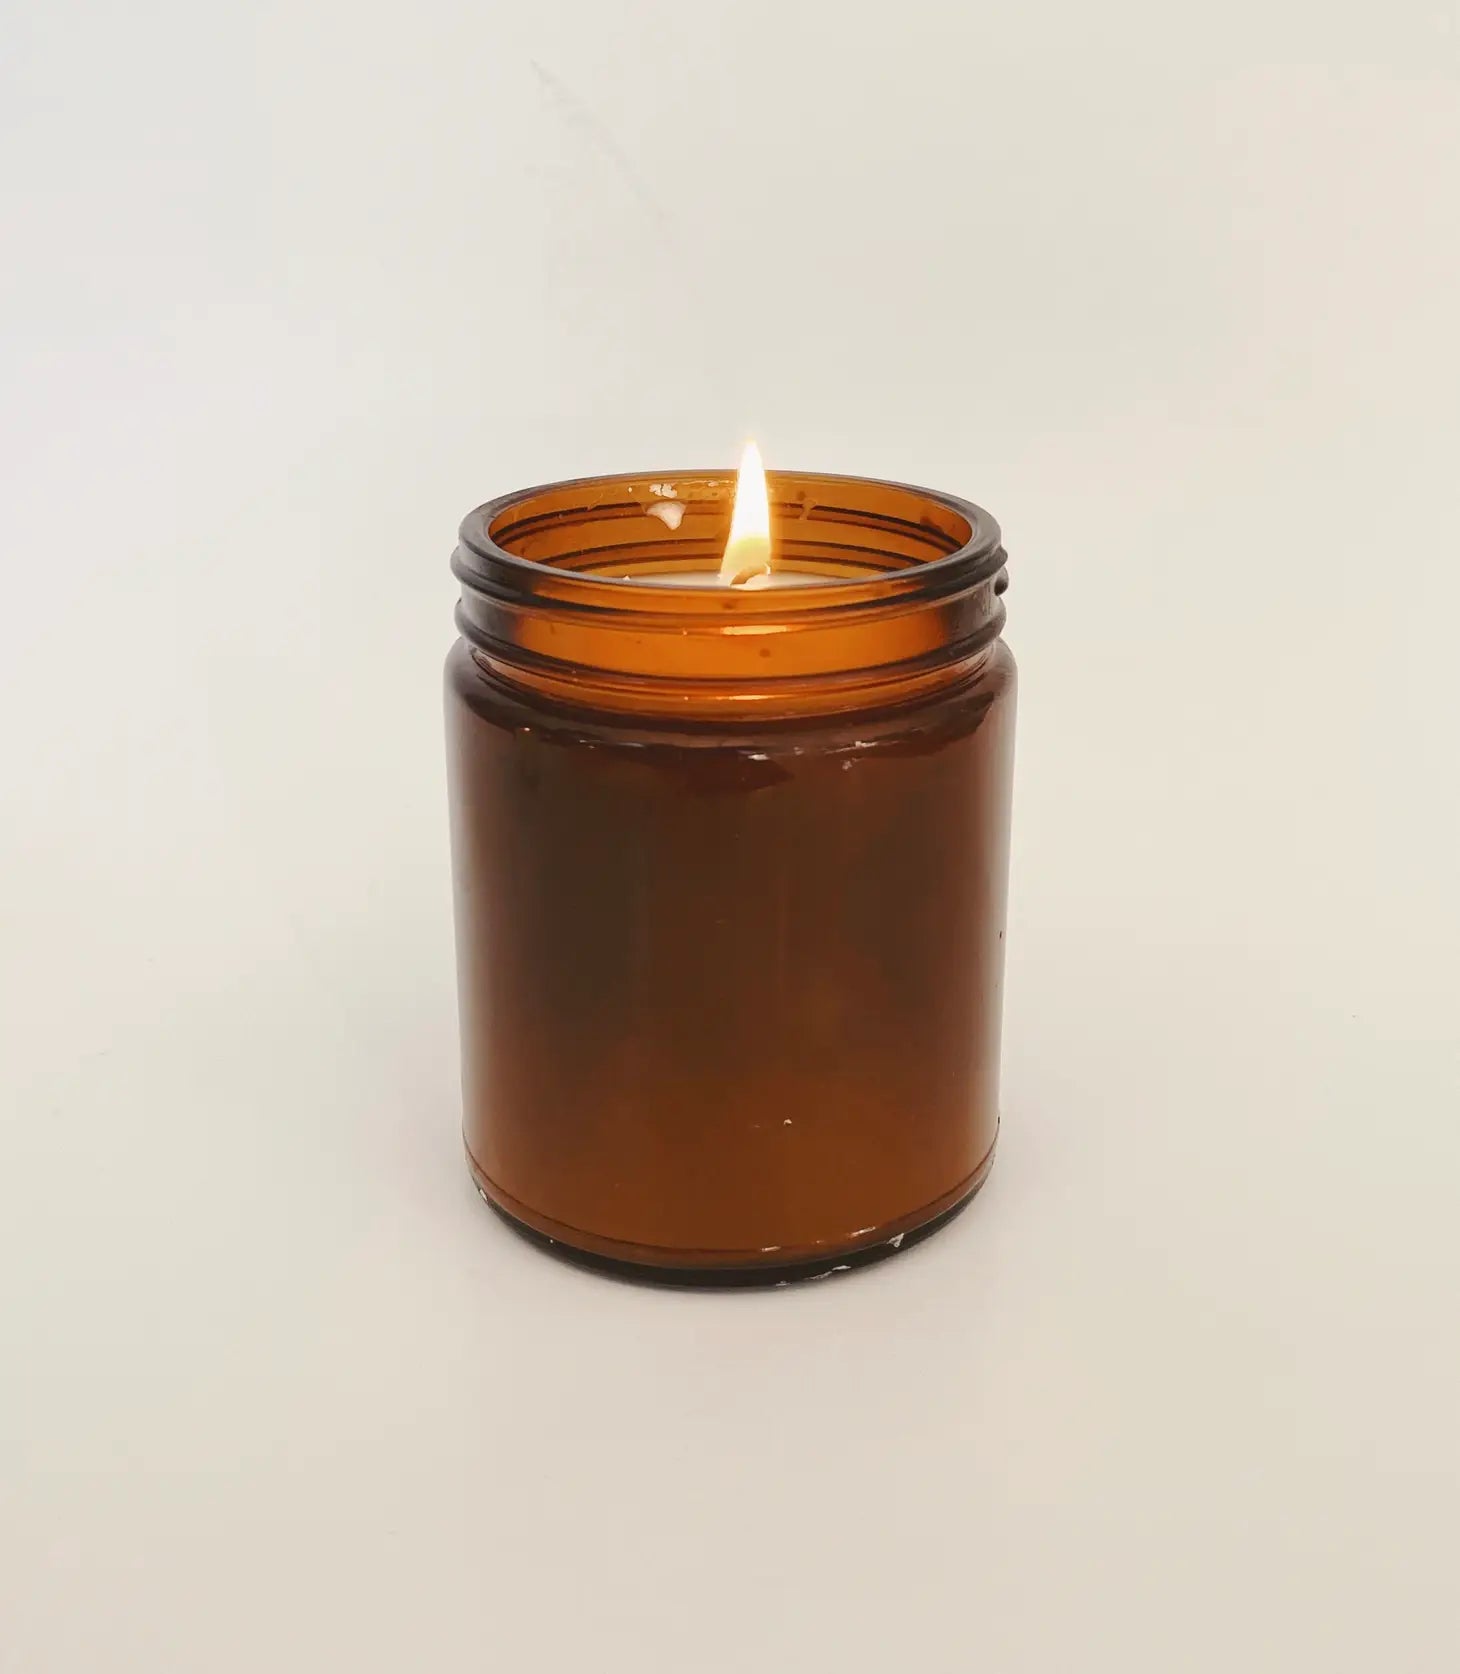 Golden Hour Handpoured Coconut Wax Candle